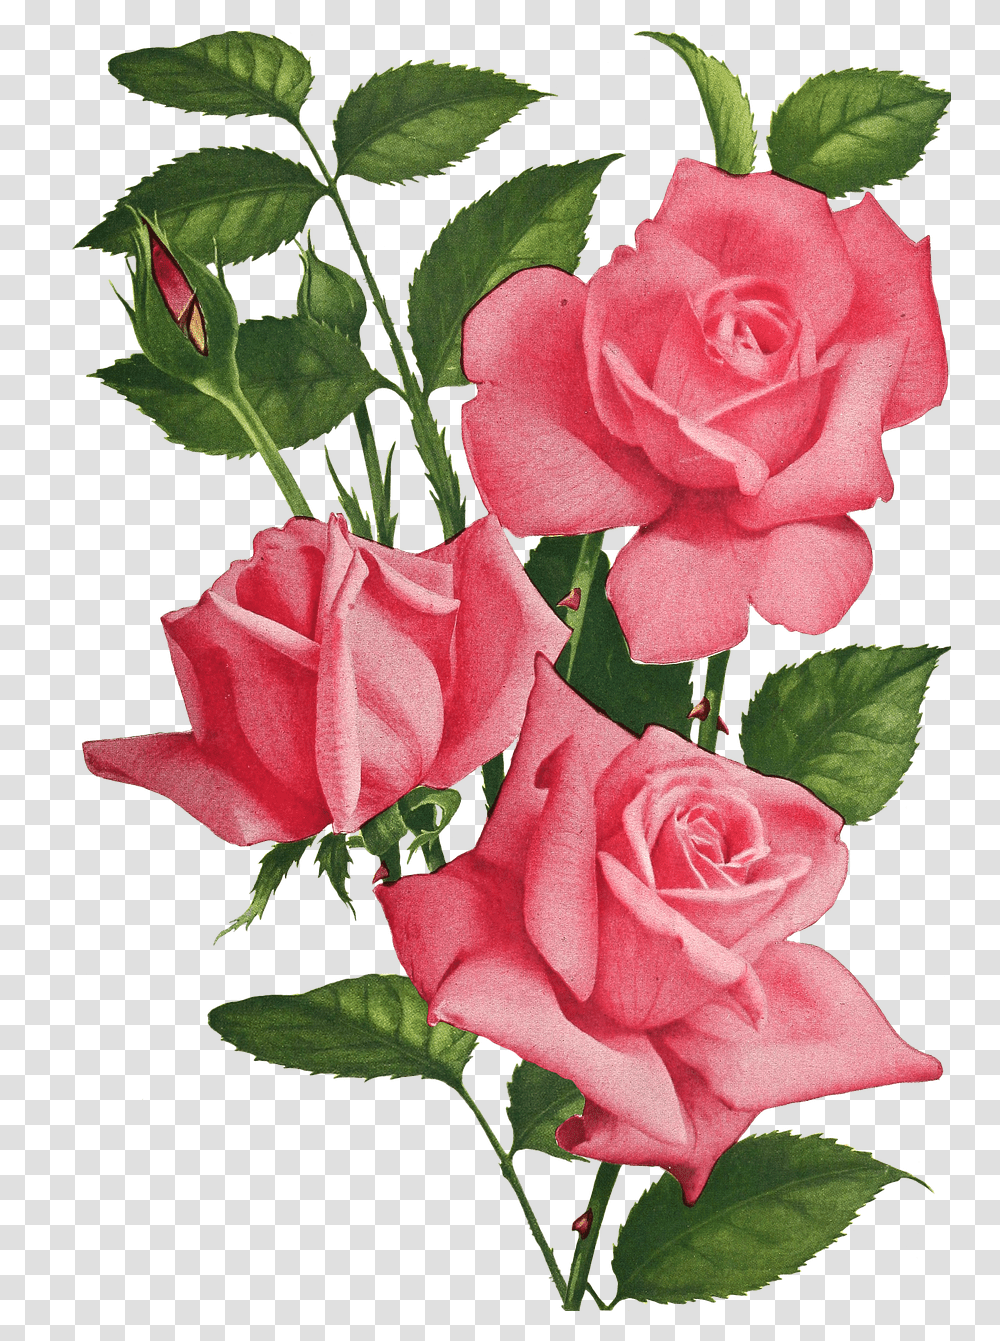 Vintage Roses Flowers Imgenes De Rosas Y Flores, Plant, Blossom, Geranium, Flower Bouquet Transparent Png